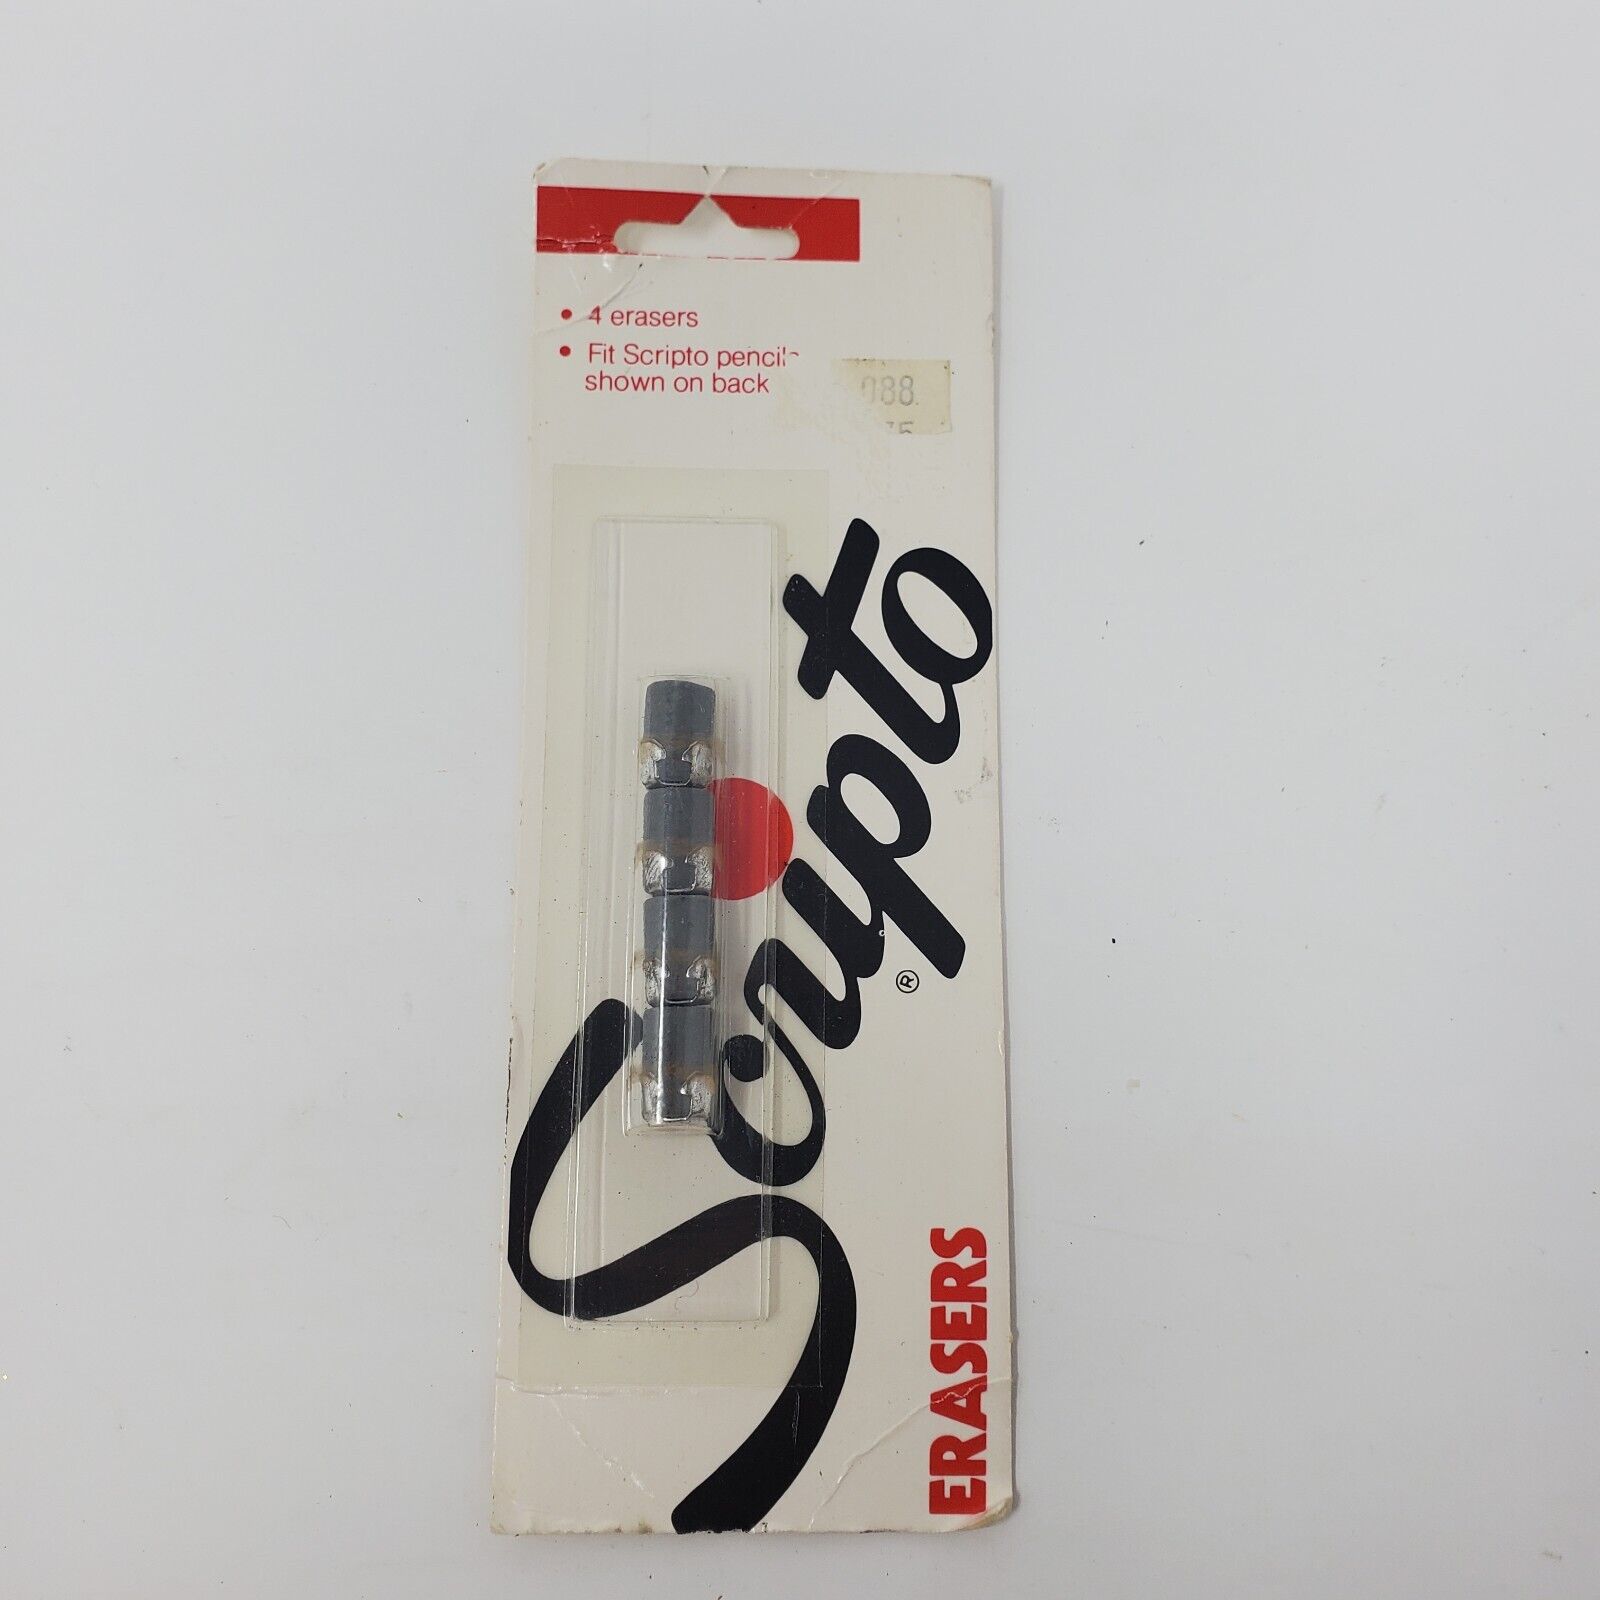 Scripto Long Eraser Pack of 4 Erasers New No. J159 Fits P400 P409 K780 K770 K789